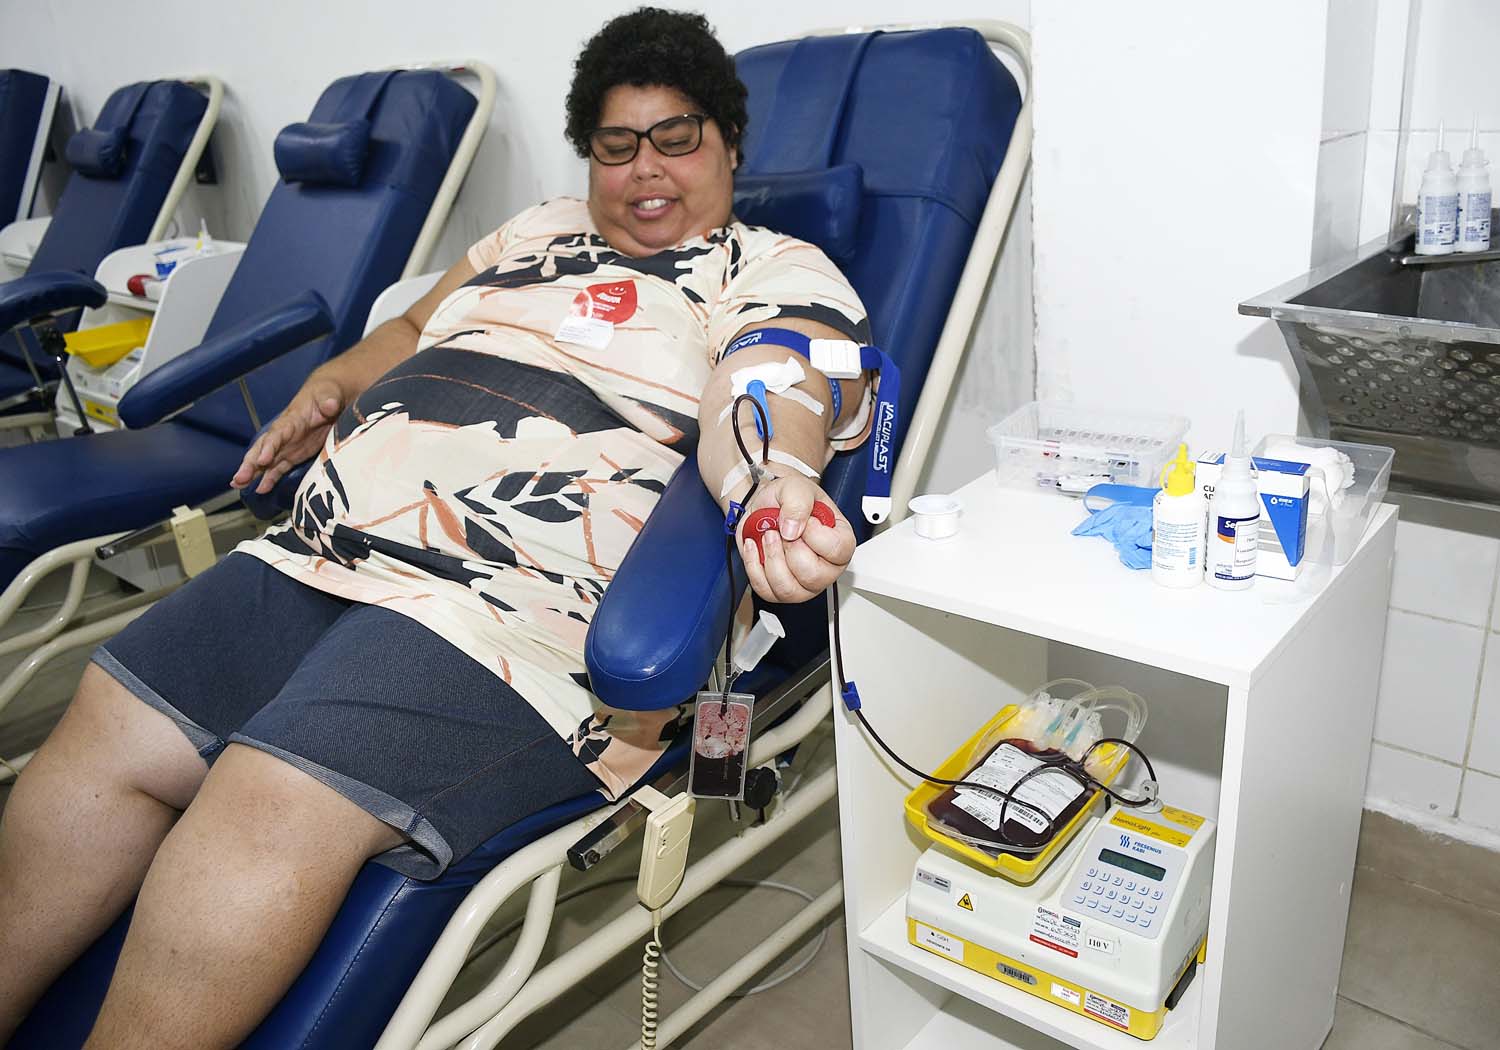 Hospital Geral de Nova Iguaçu irá receber doações de sangue neste feriado